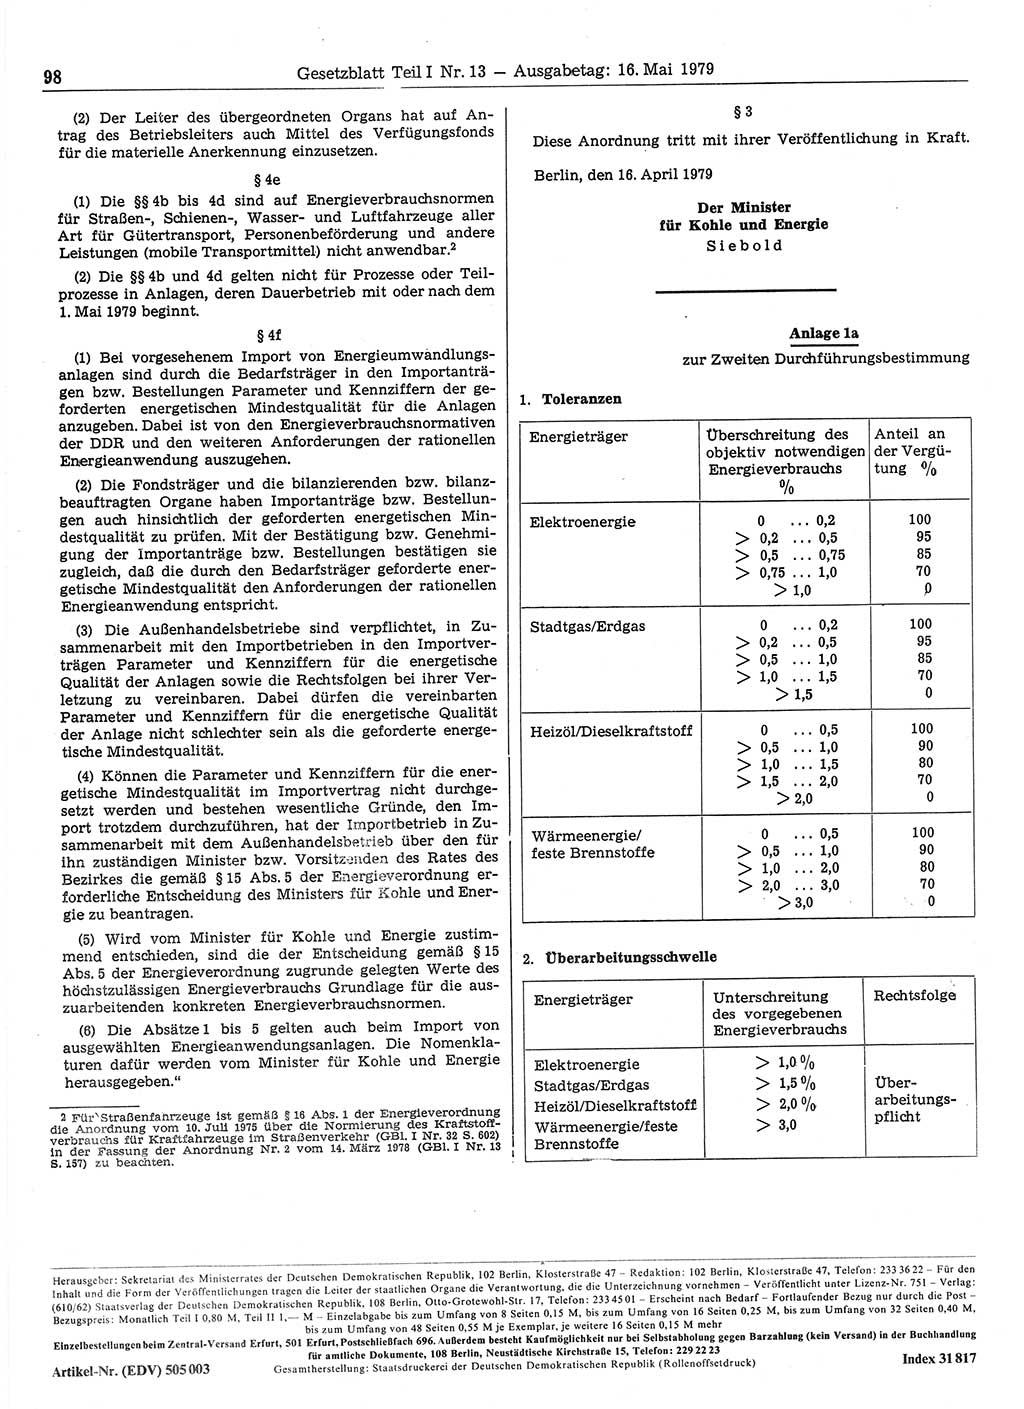 Gesetzblatt (GBl.) der Deutschen Demokratischen Republik (DDR) Teil Ⅰ 1979, Seite 98 (GBl. DDR Ⅰ 1979, S. 98)